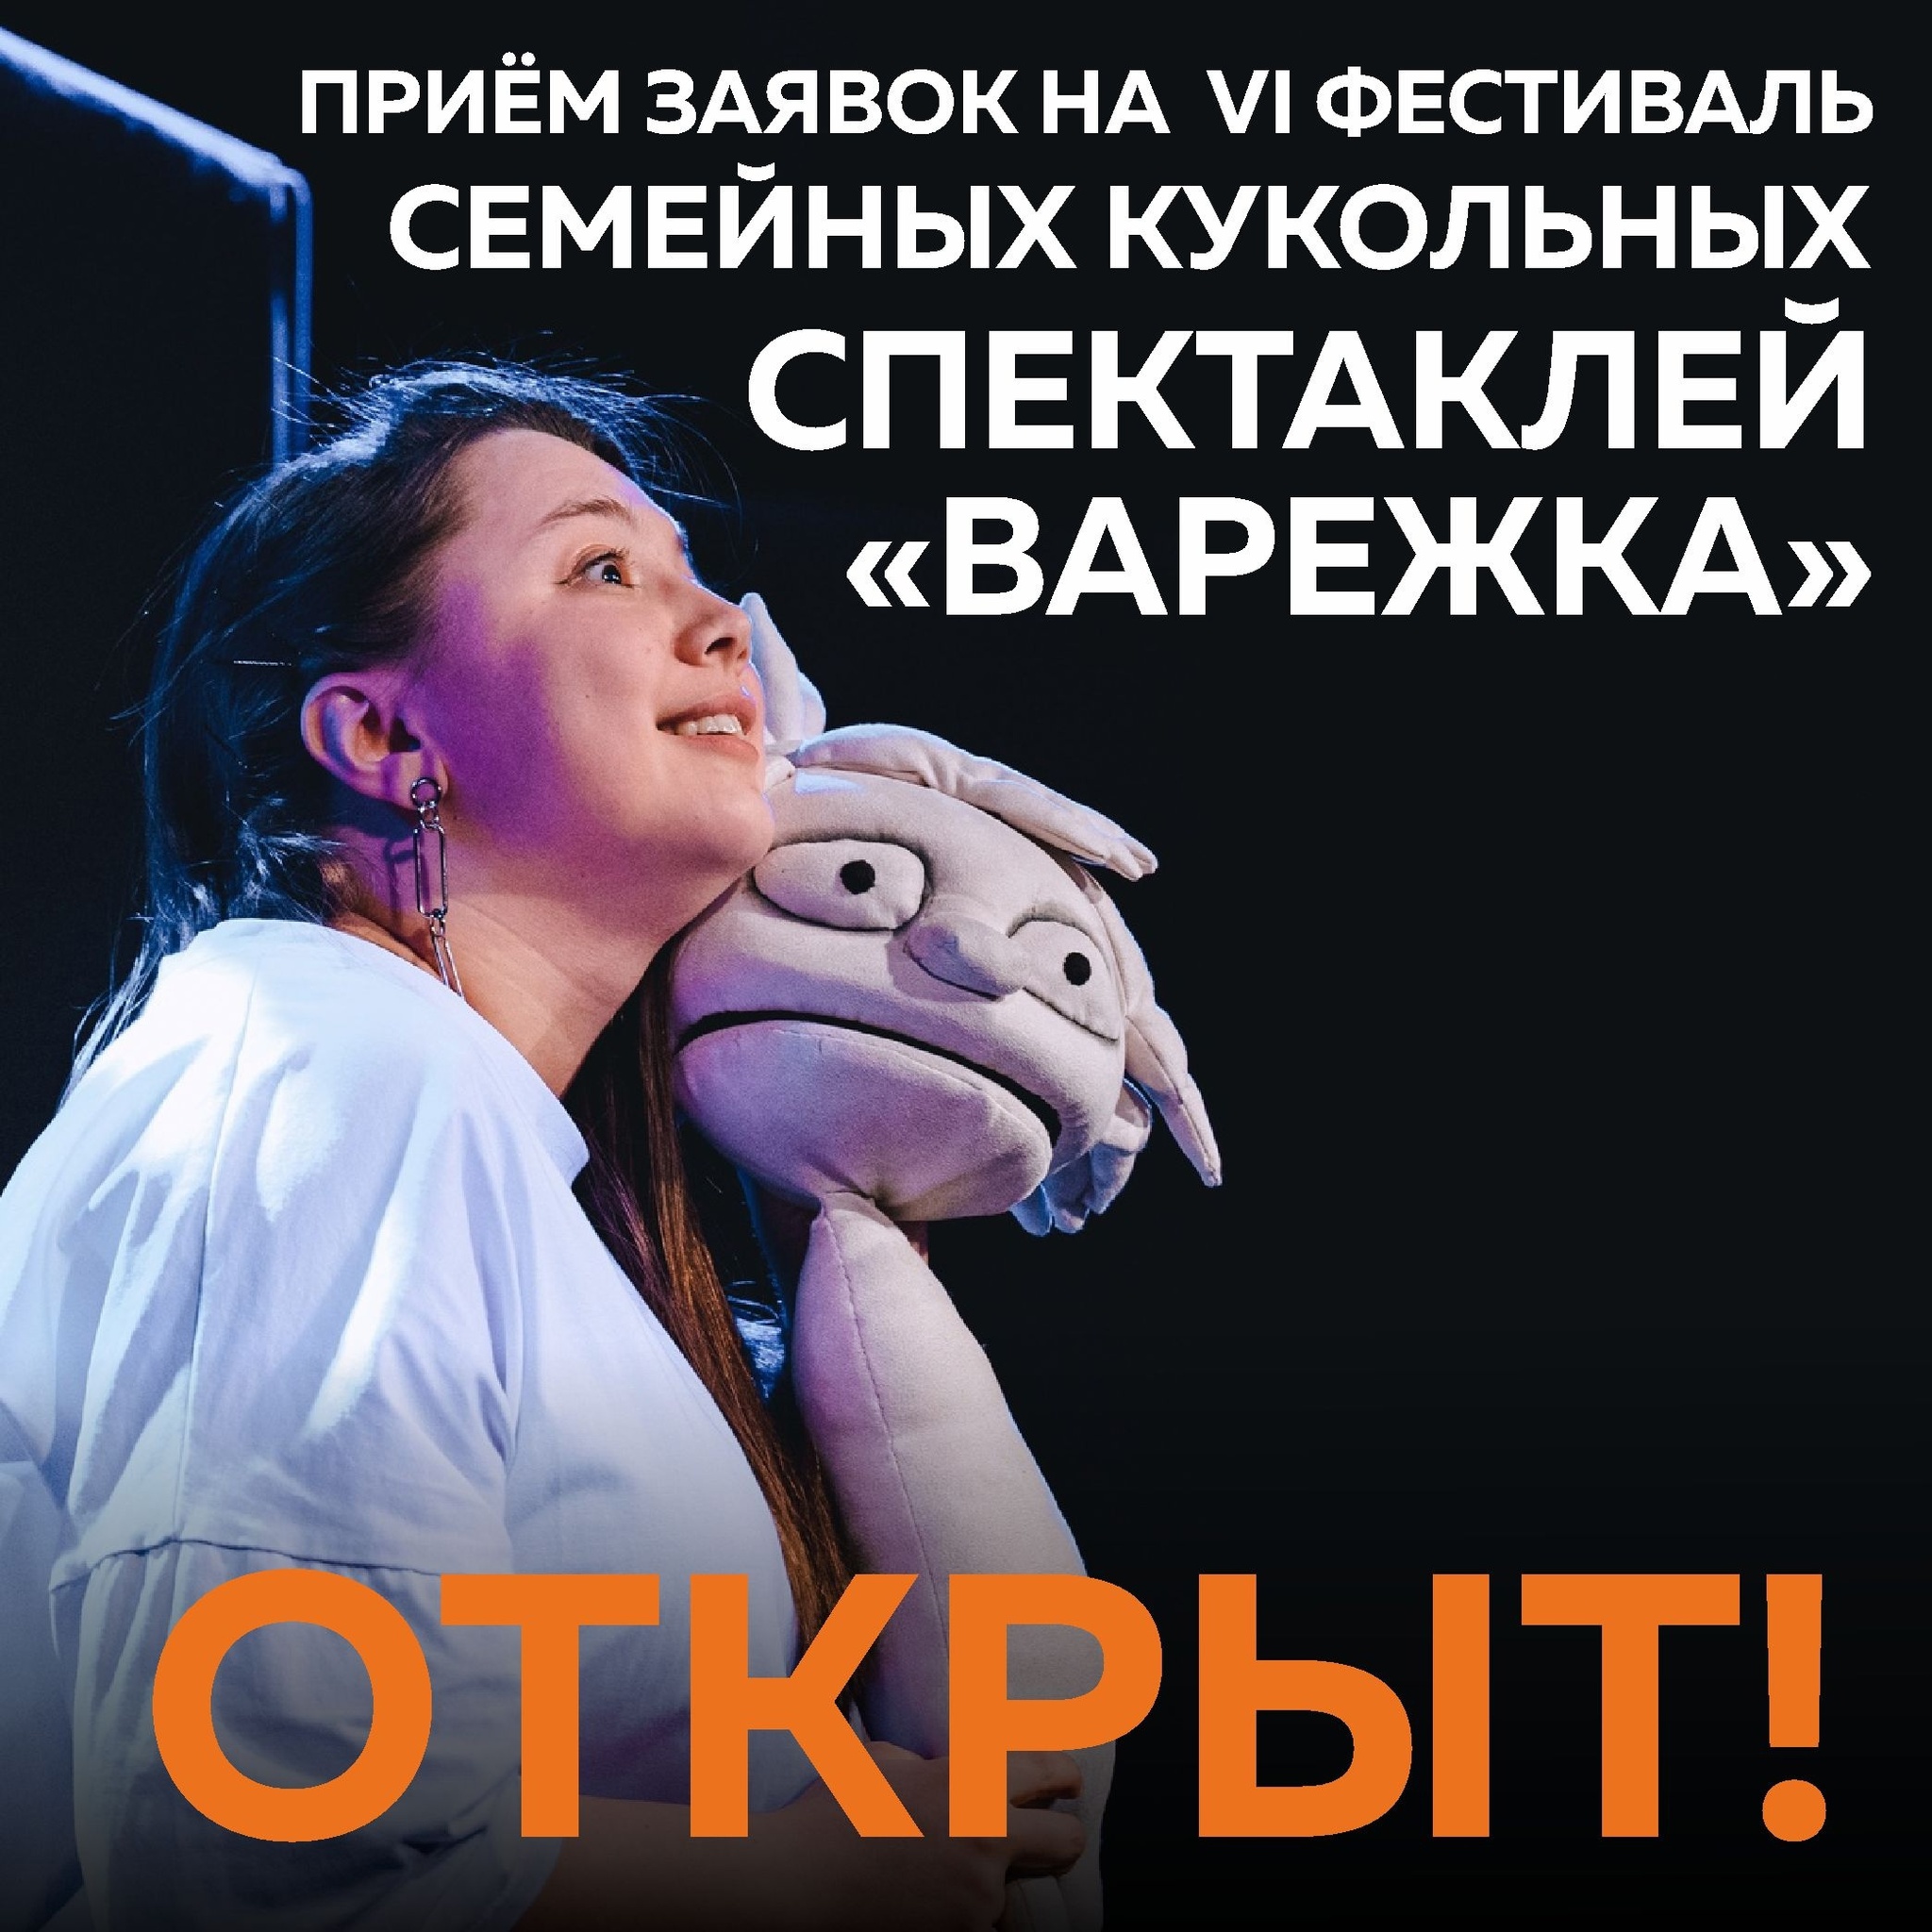 Ханты-Мансийский театр кукол открывает приём заявок на VI фестиваль семейных кукольных спектаклей «Варежка».